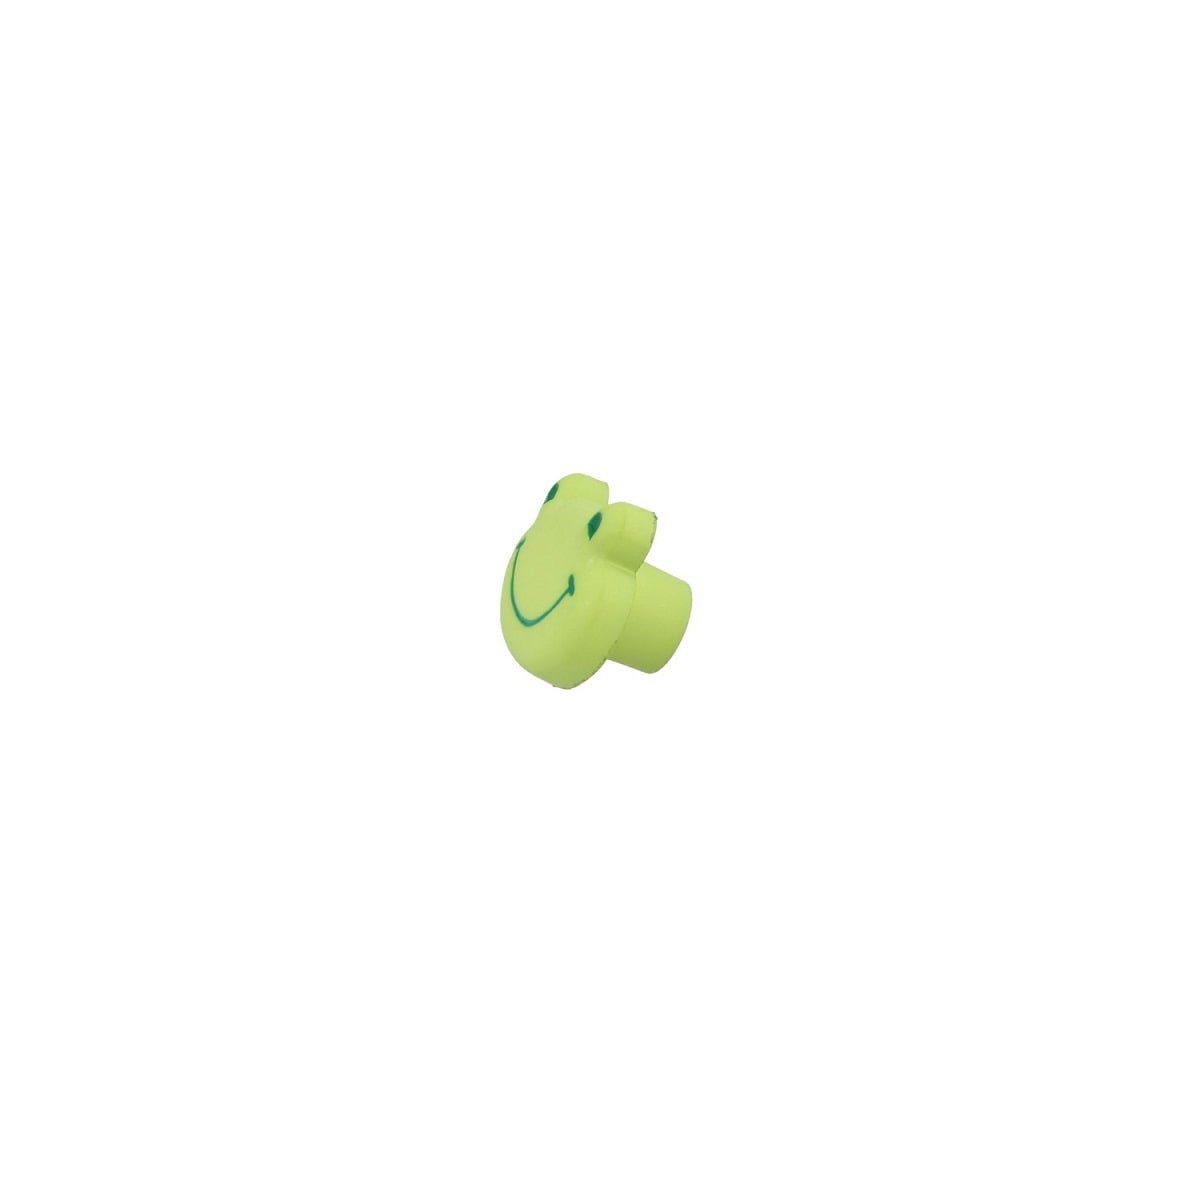 Möbelknopf Beschläge Grüner Türbeschlag Frosch 35mm MS Kindermöbelknopf